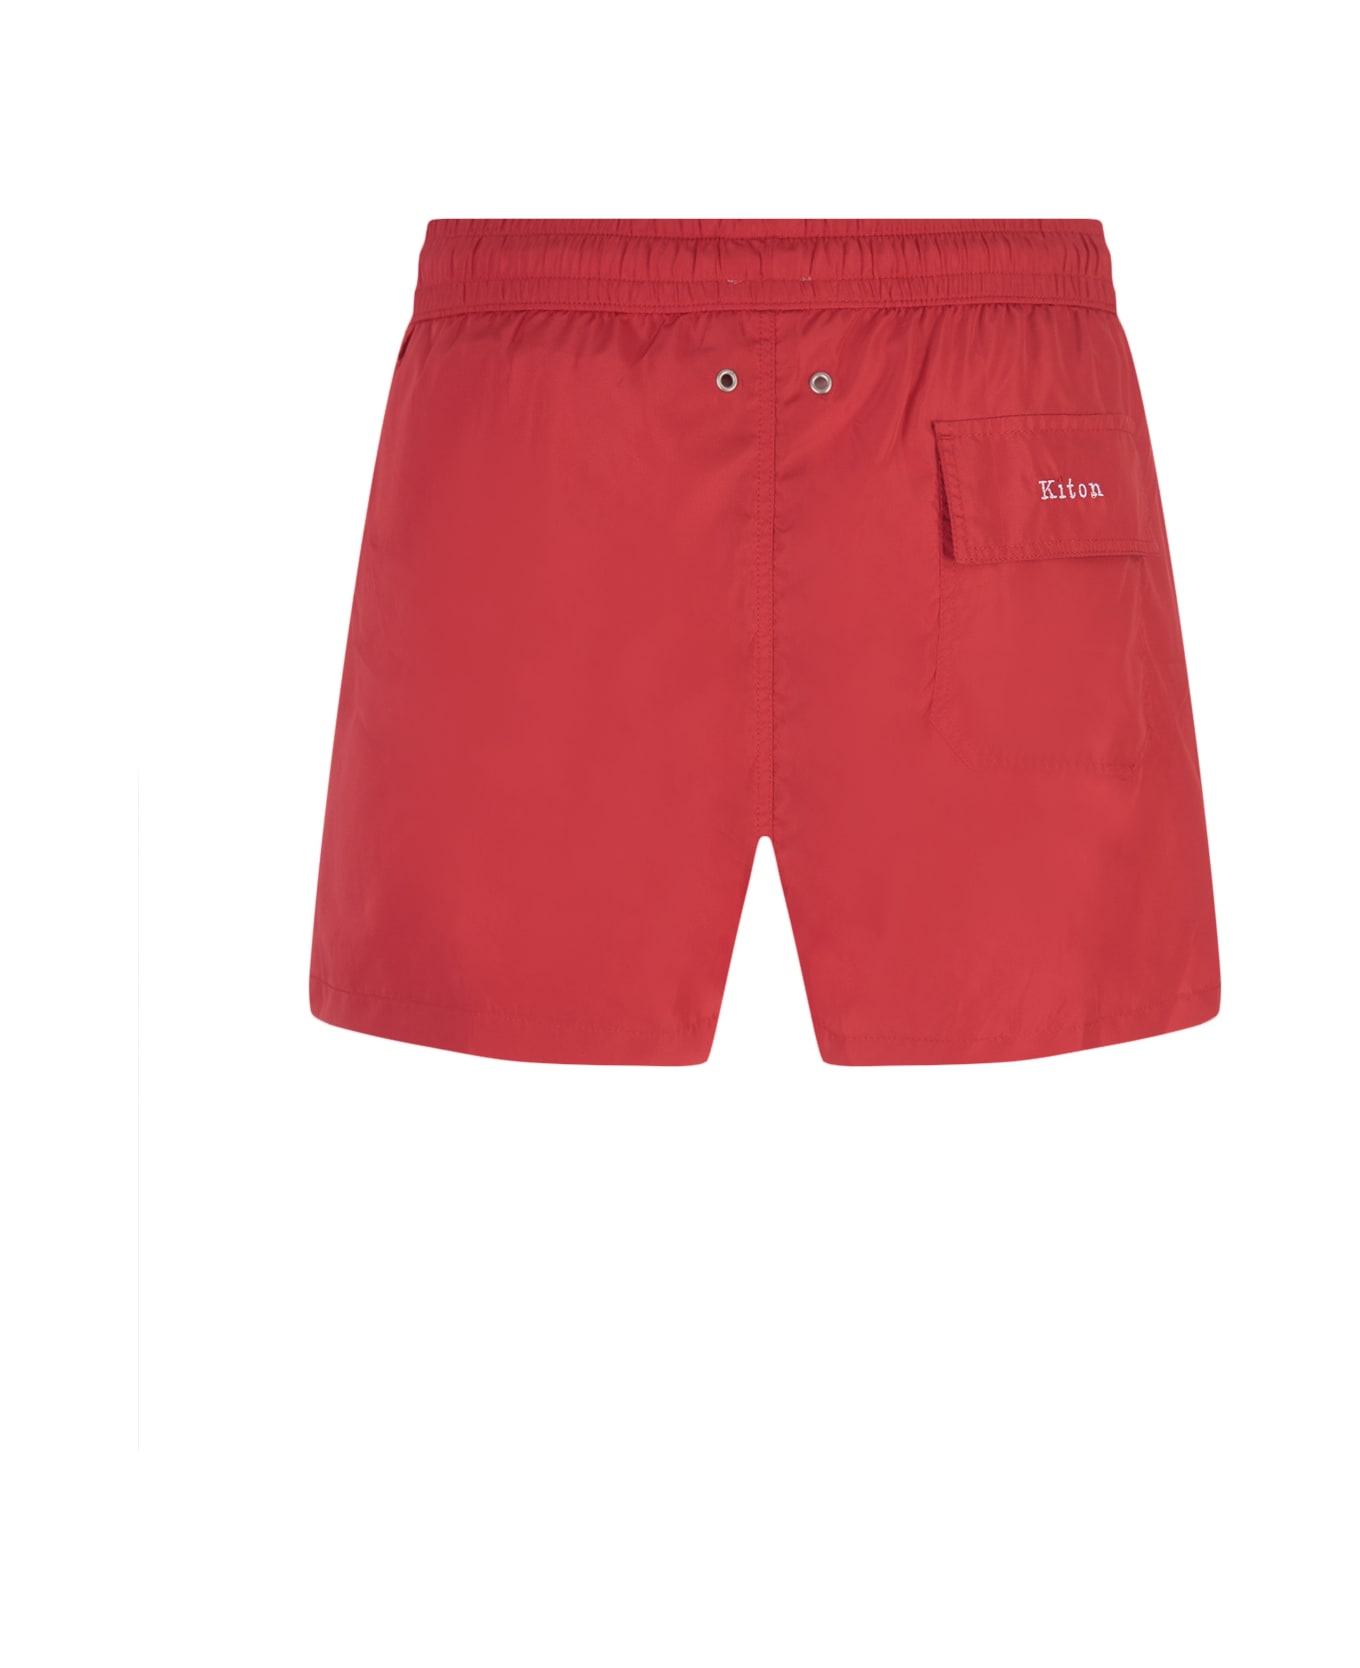 Kiton Red Swim Shorts - Red